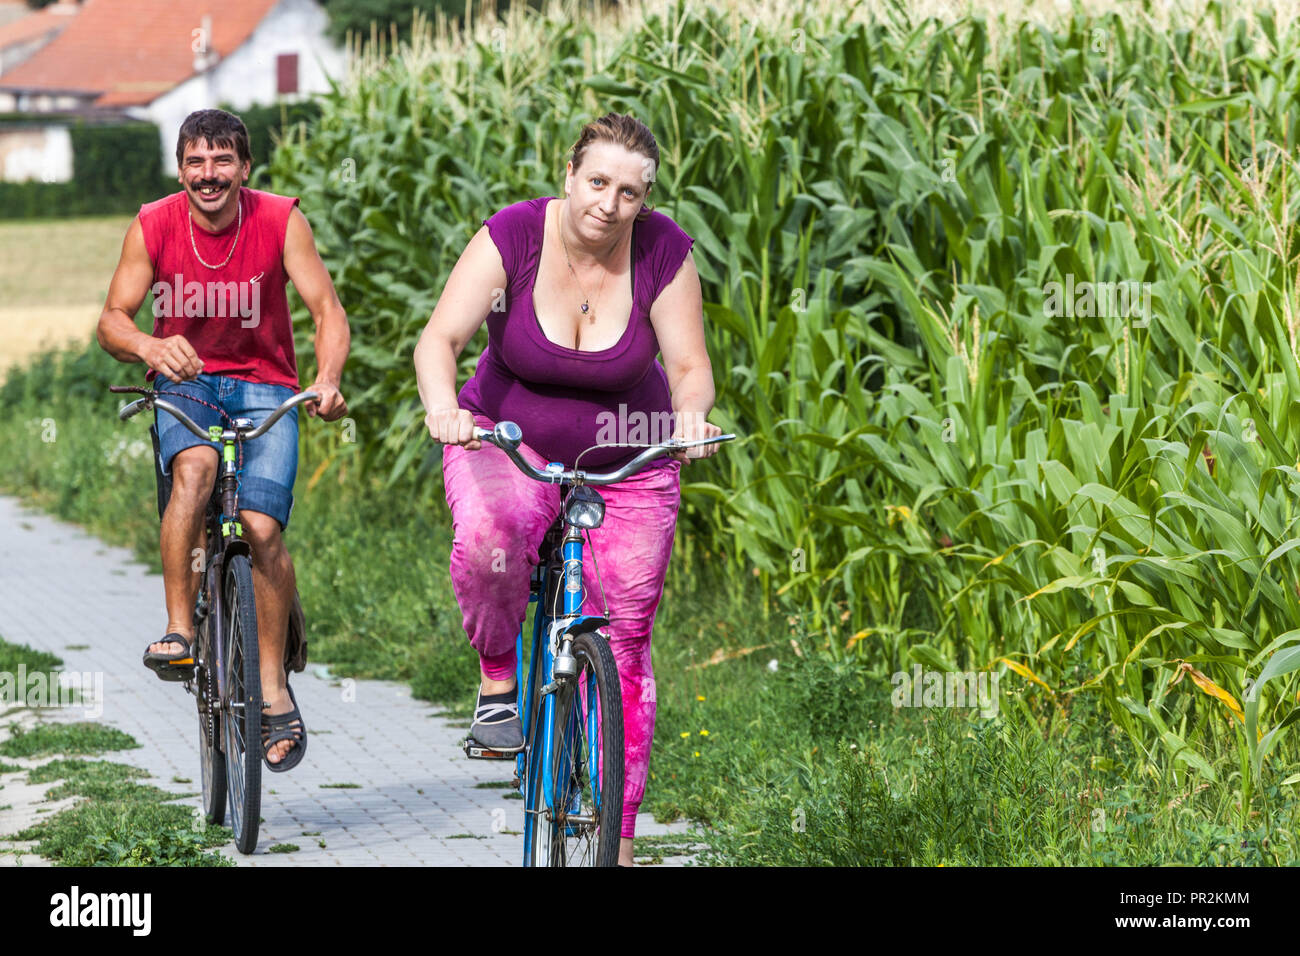 Vita del popolo ceco, uomo sorridente e donna obesa in bicicletta, giro in bicicletta intorno al campo di mais, campagna morava Repubblica ceca in bicicletta sovrappeso Foto Stock